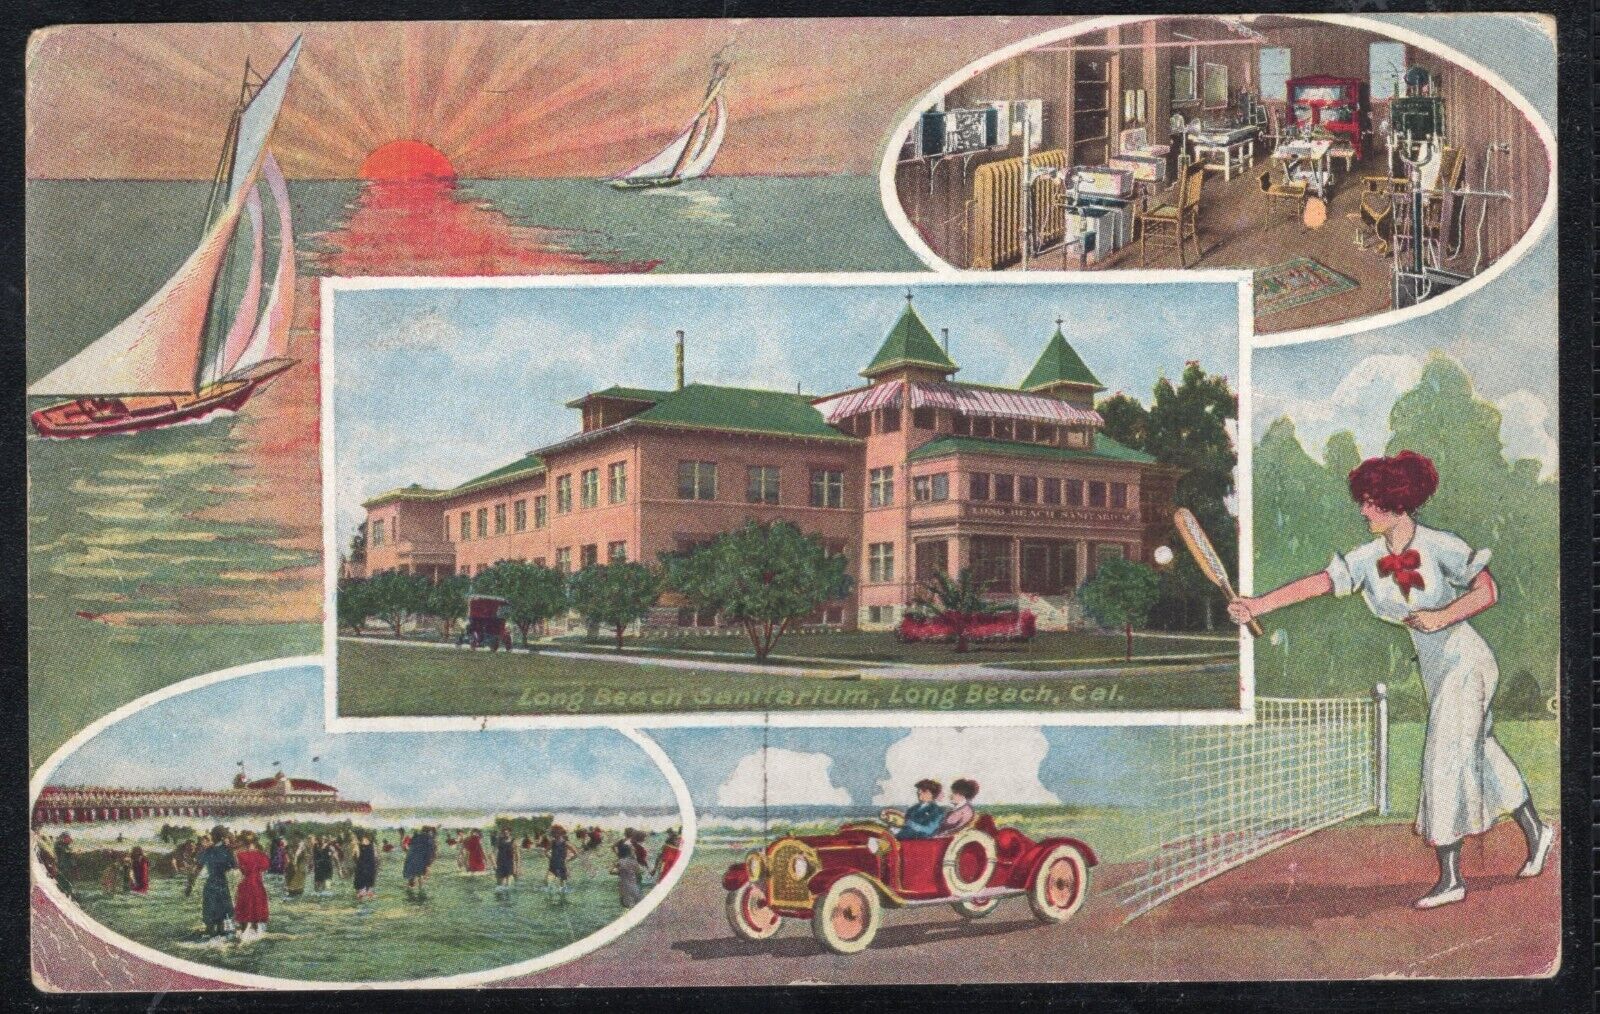 Long Beach Sanitarium postcard 1916 showing classic car